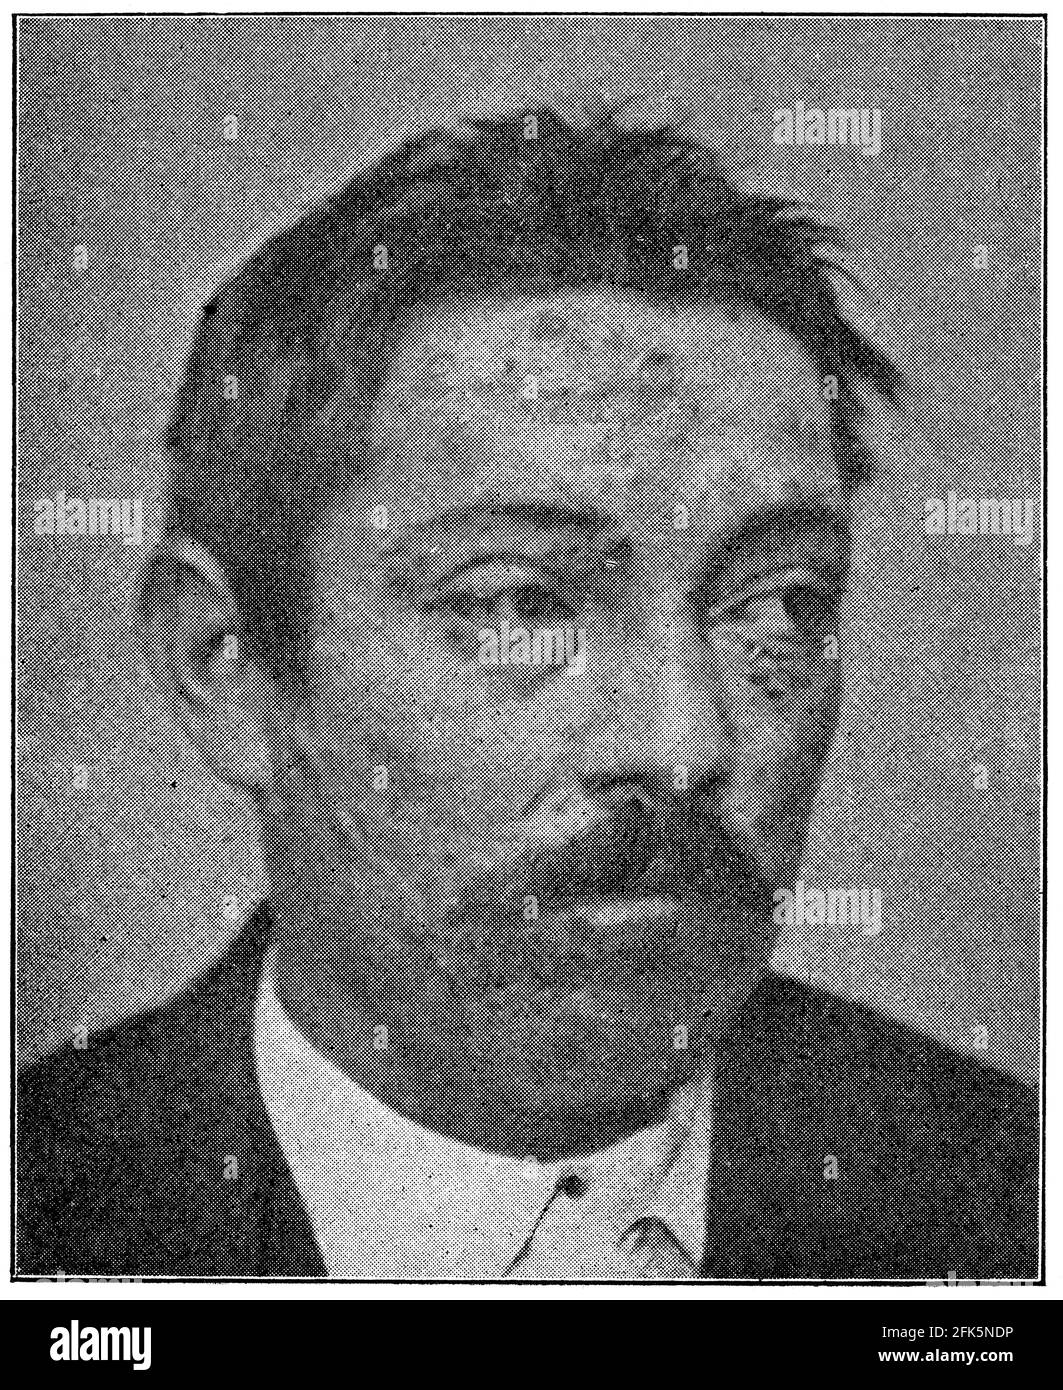 Ce patient a présenté une syphilis maligne. Illustration du 19e siècle. Allemagne. Arrière-plan blanc. Banque D'Images